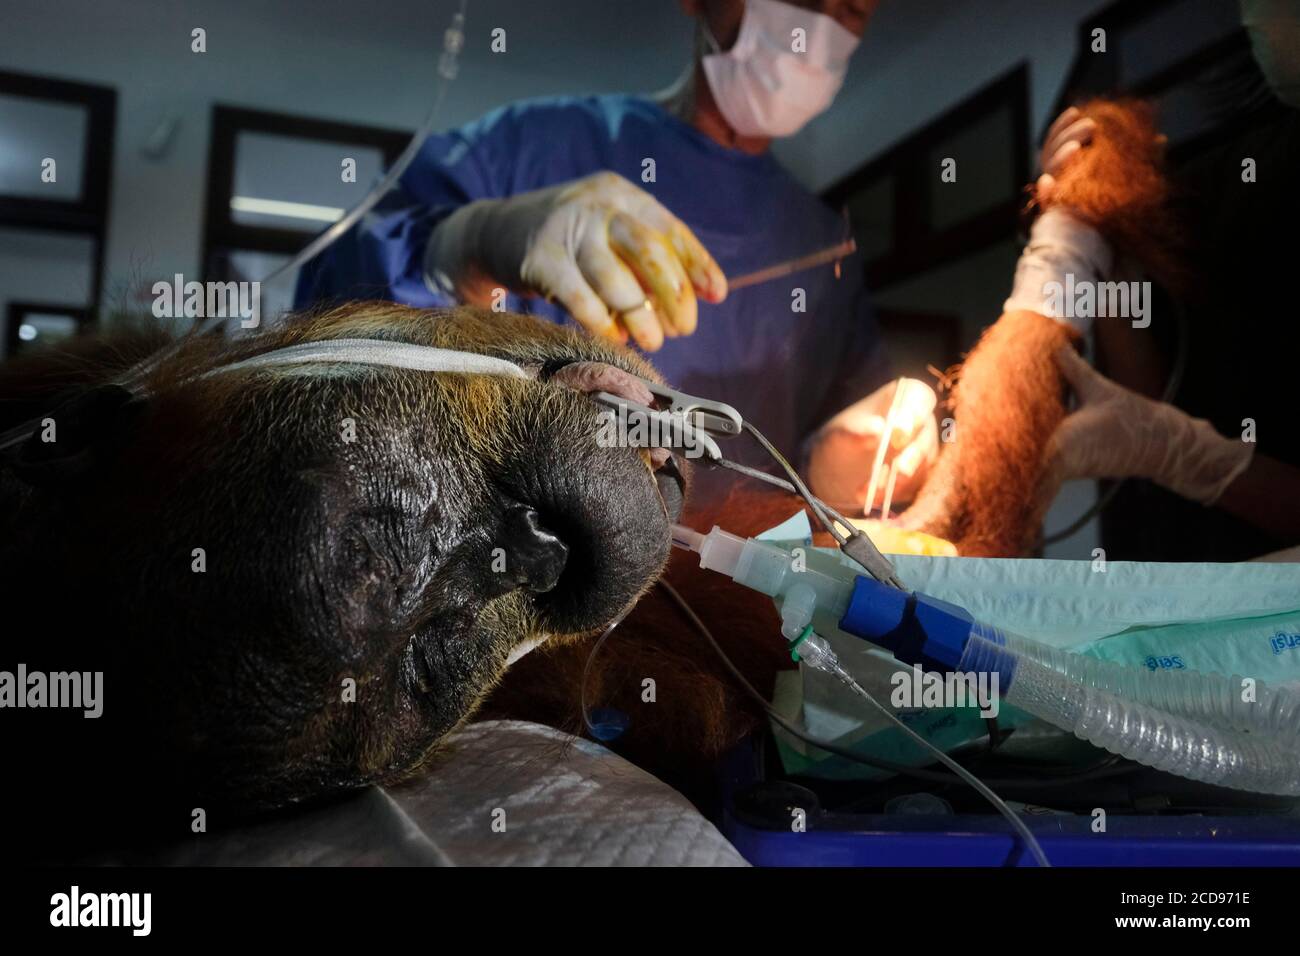 Indonesia, Sumatra, Centro de cuarentena del SOCP, rescatando orangutanes en dificultad por el Dr. Andreas Messikommer, cirujano suizo especializado en cirugía ortopédica y traumatológica, antes de la socialización y reintroducción en su entorno natural Foto de stock